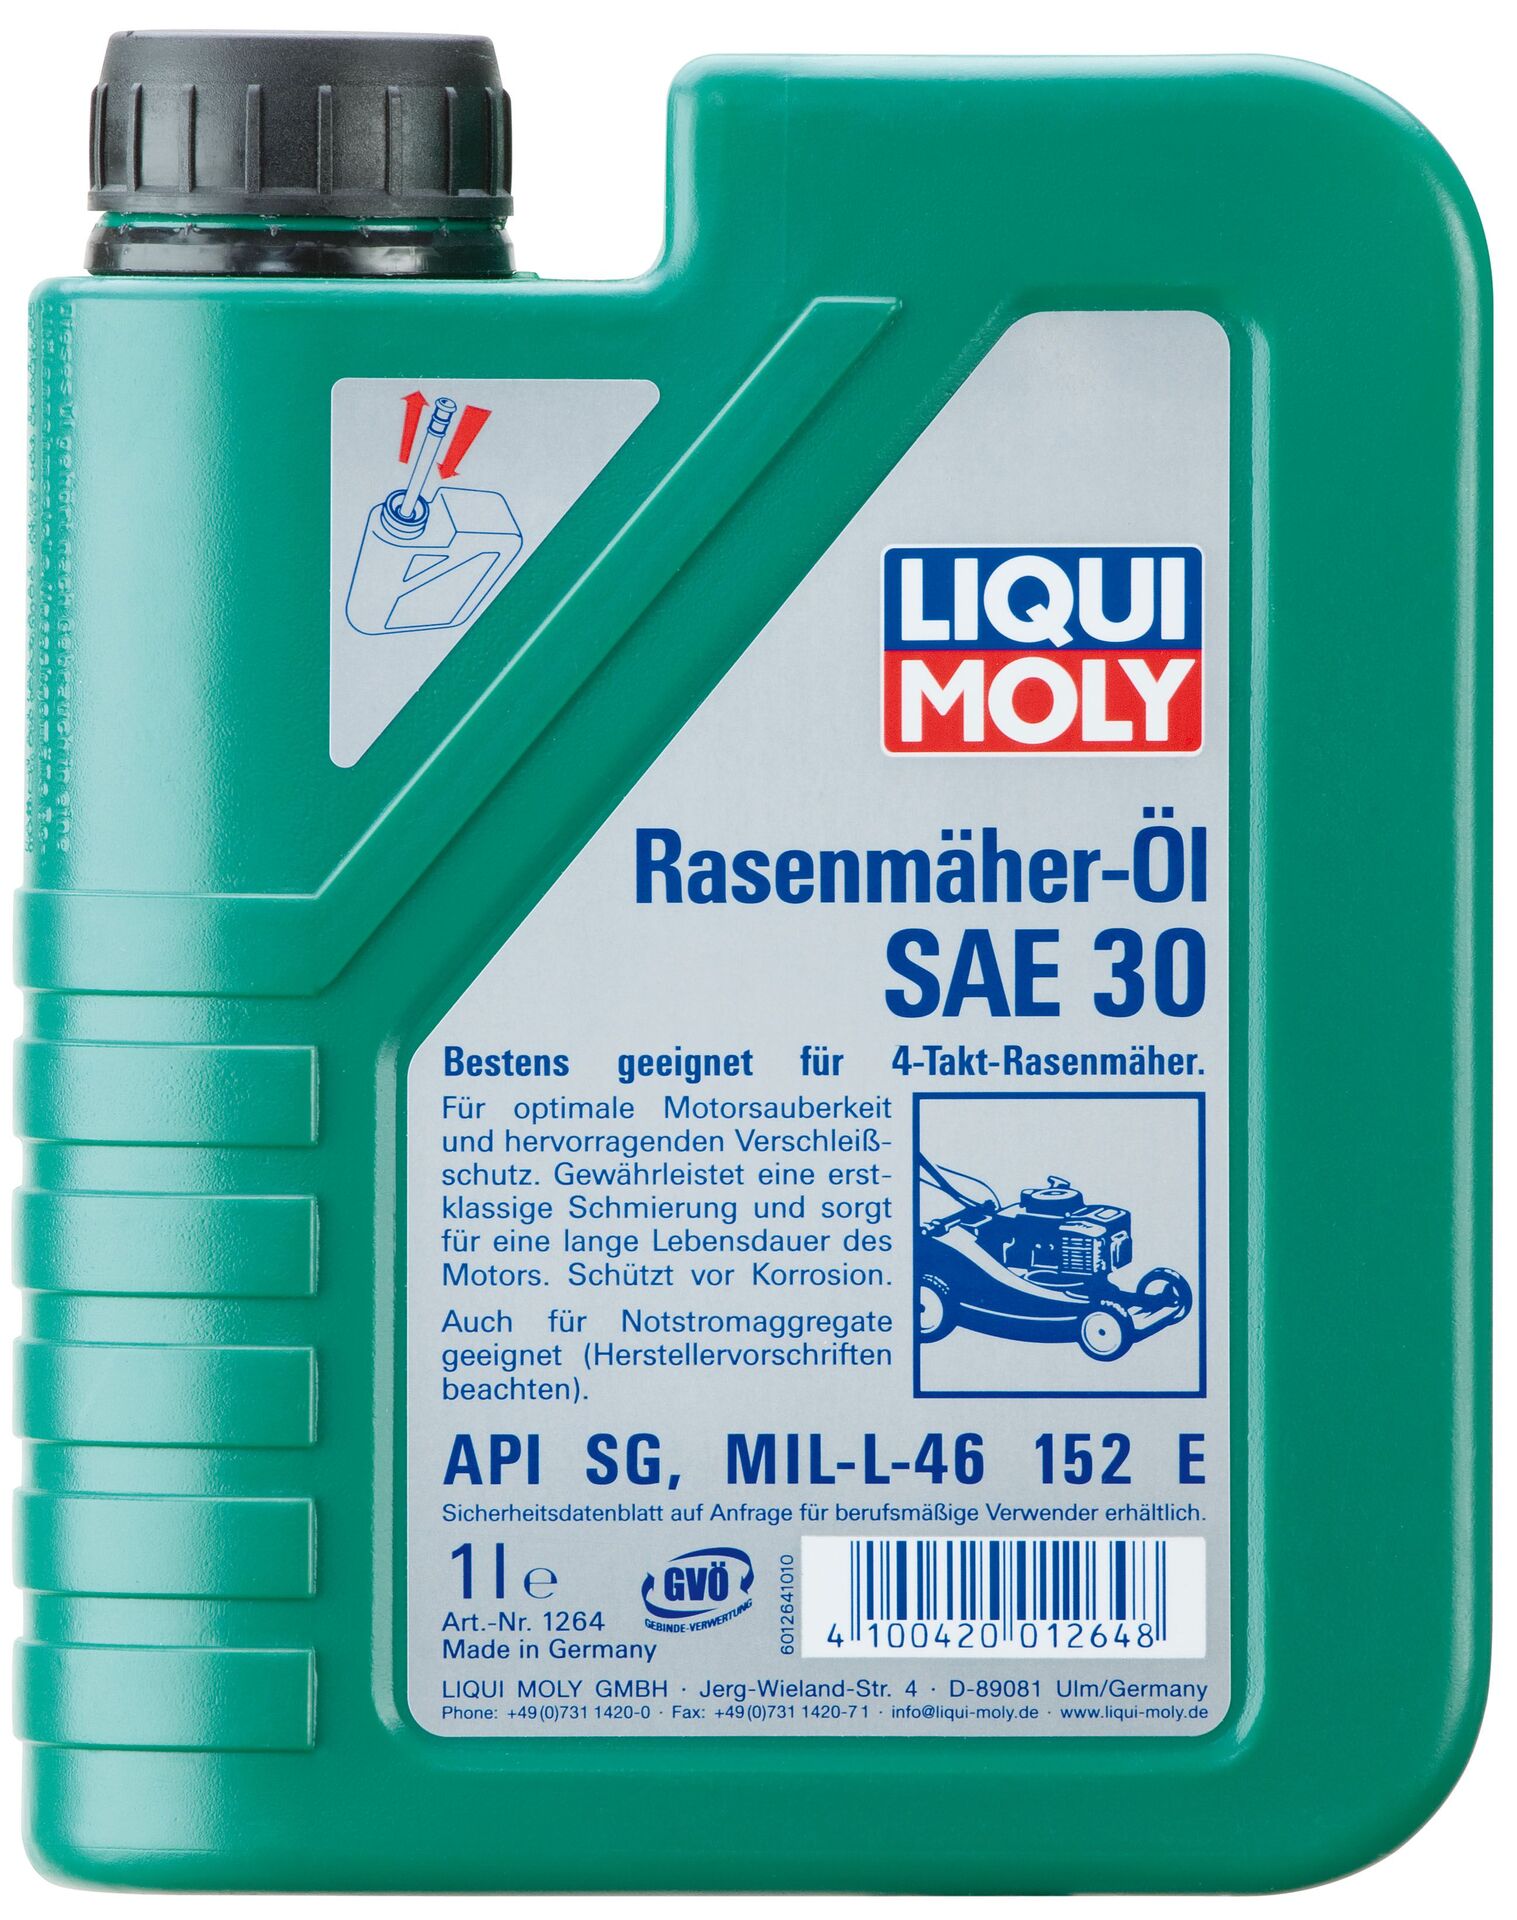 Liqui Moly Rasenmäher-Öl SAE 30